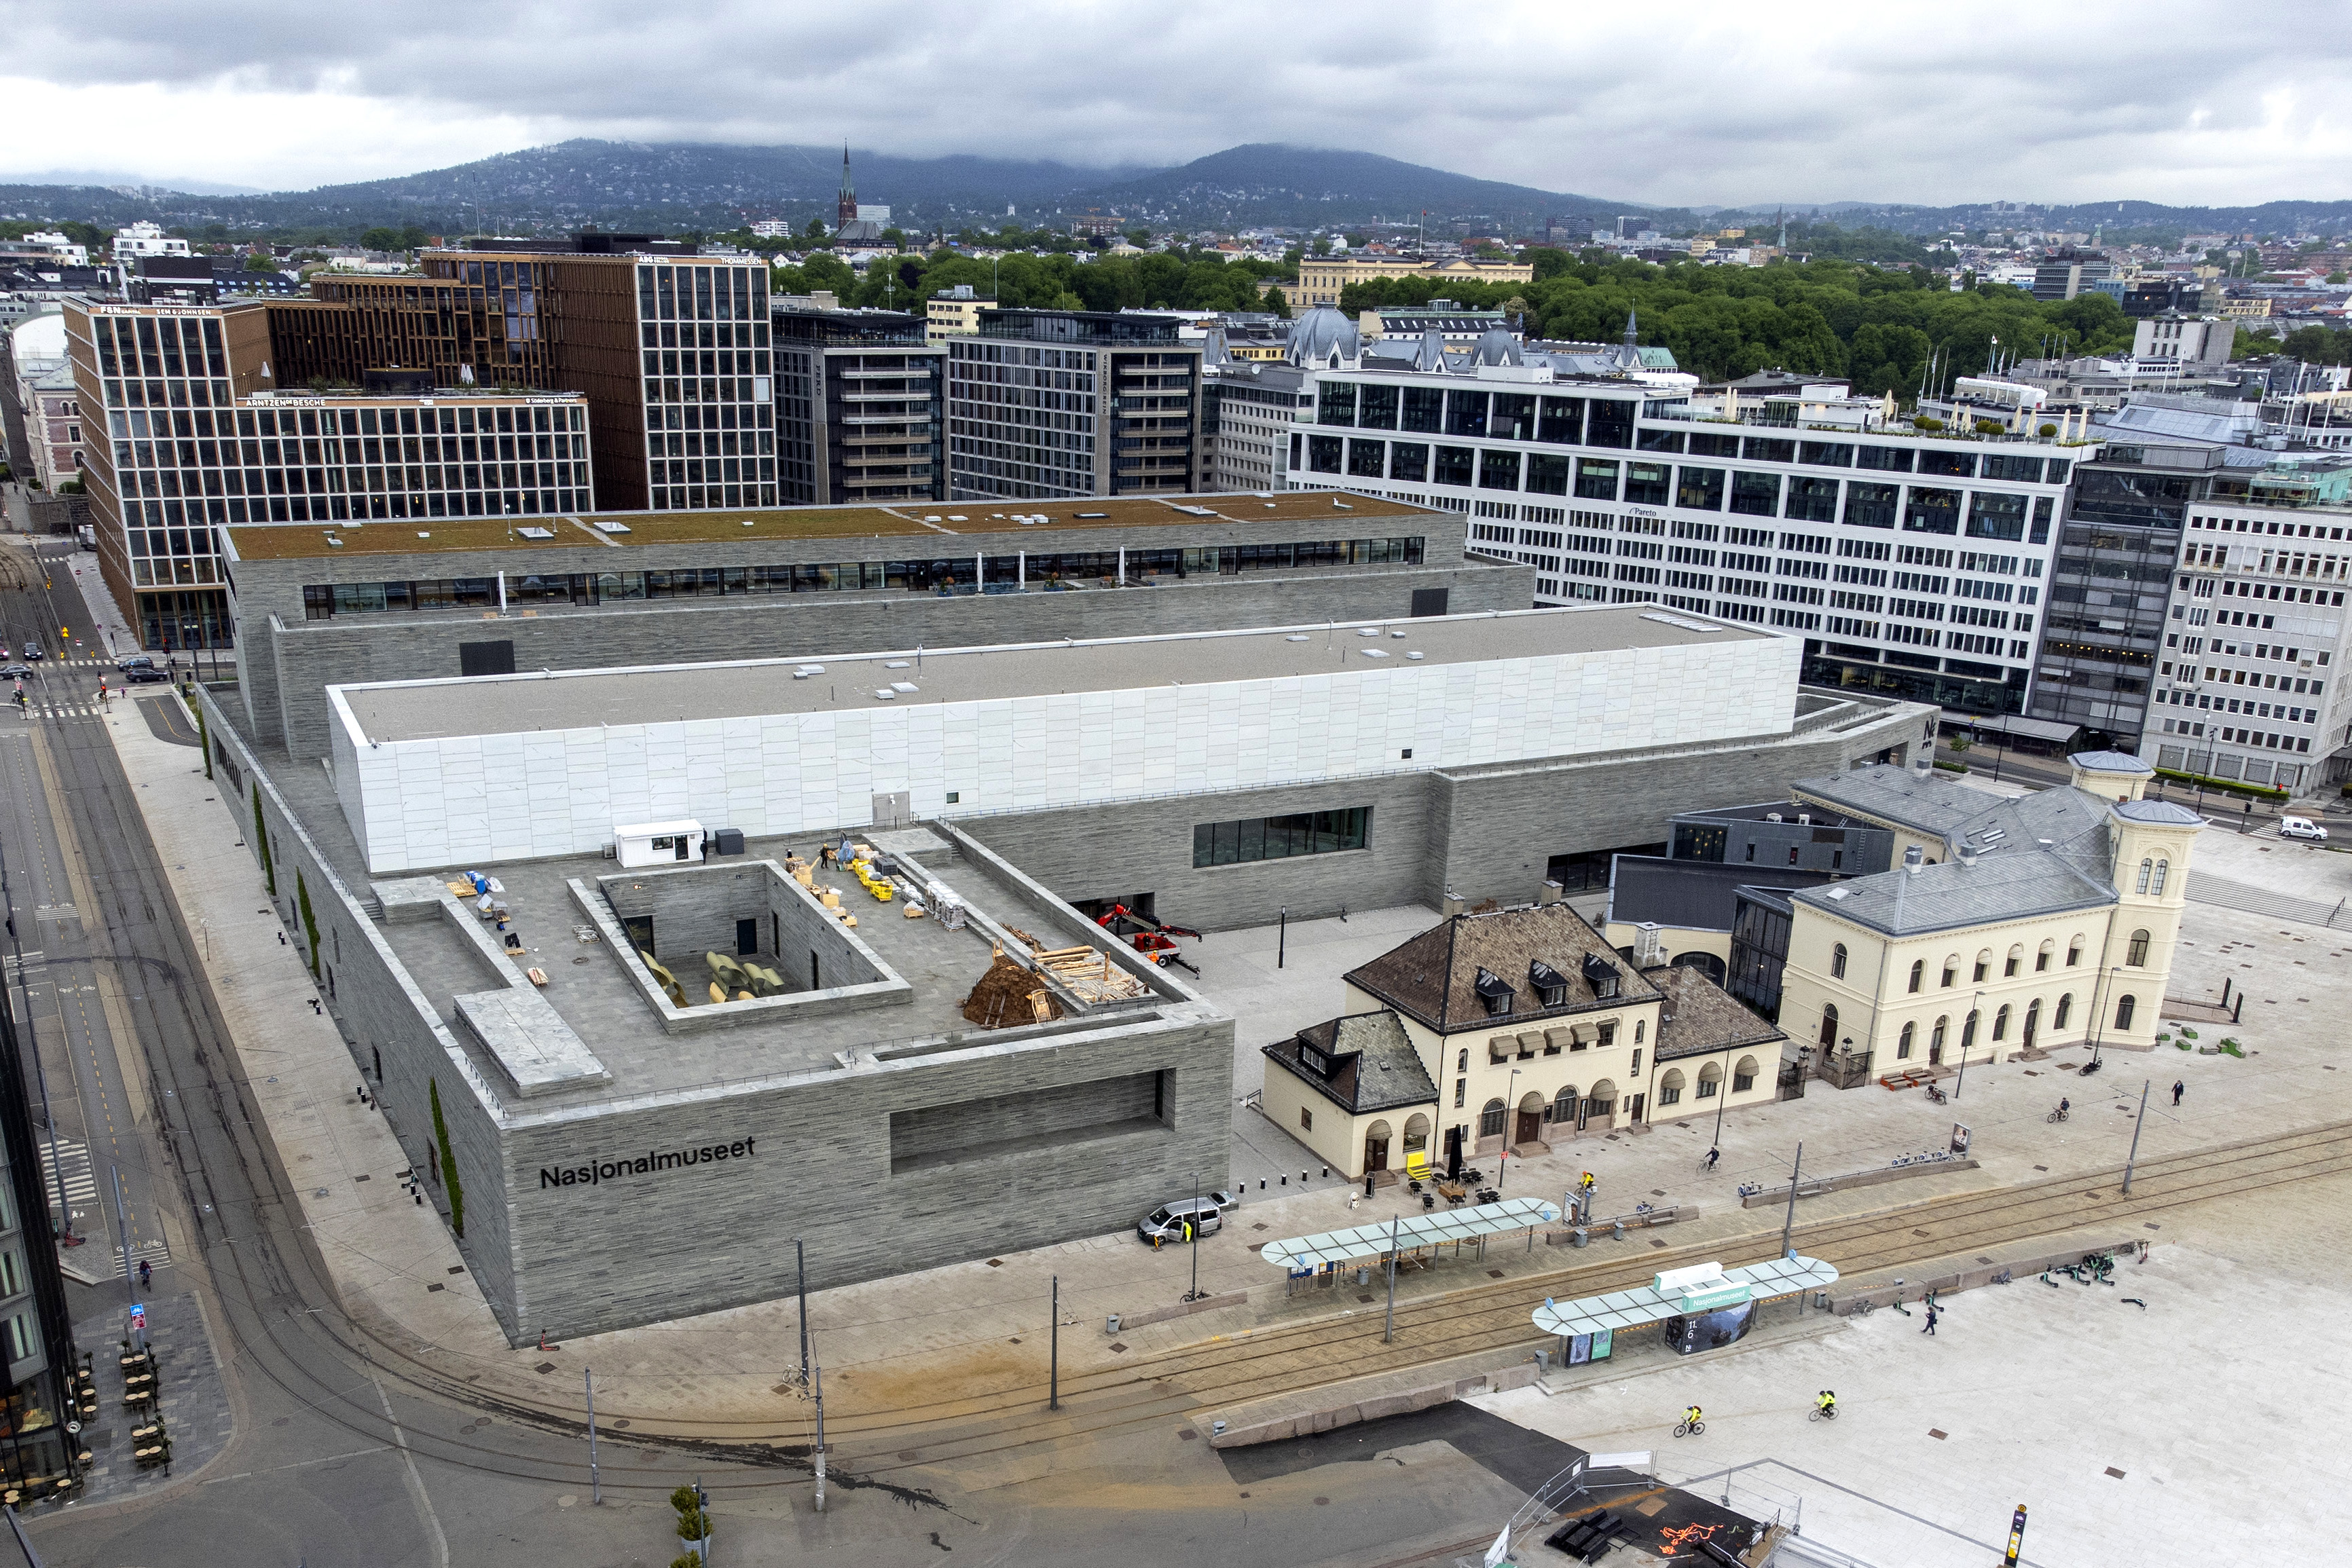 Billett til å se det nye Nasjonalmuseet er blant Norges aller dyreste